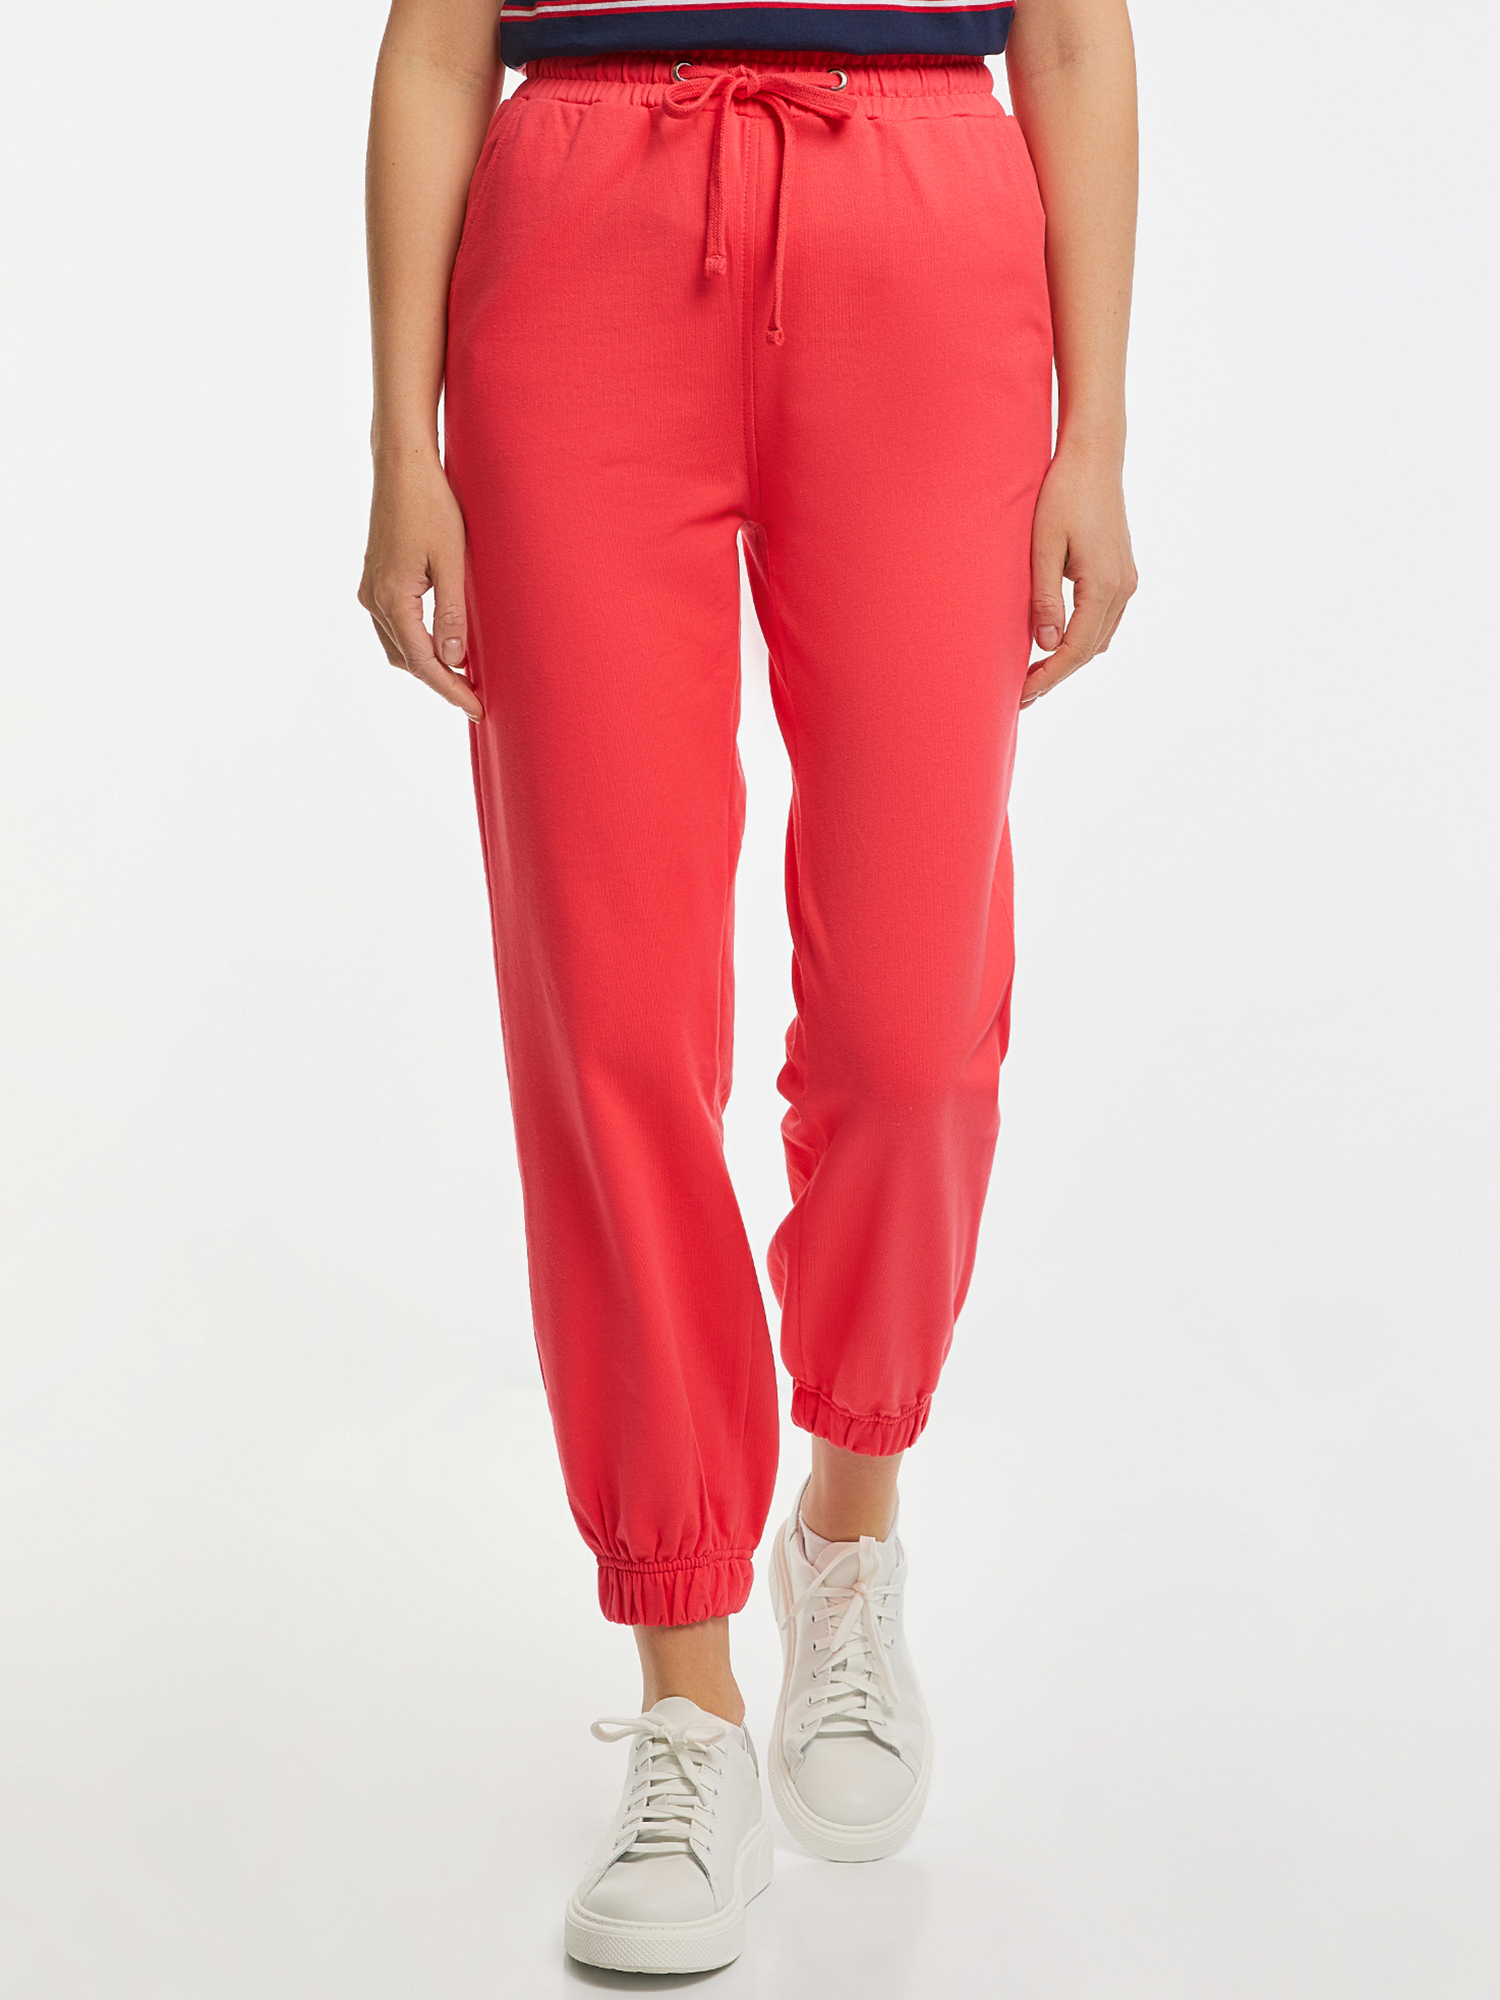 Спортивные брюки женские oodji 16701086-3 розовые M